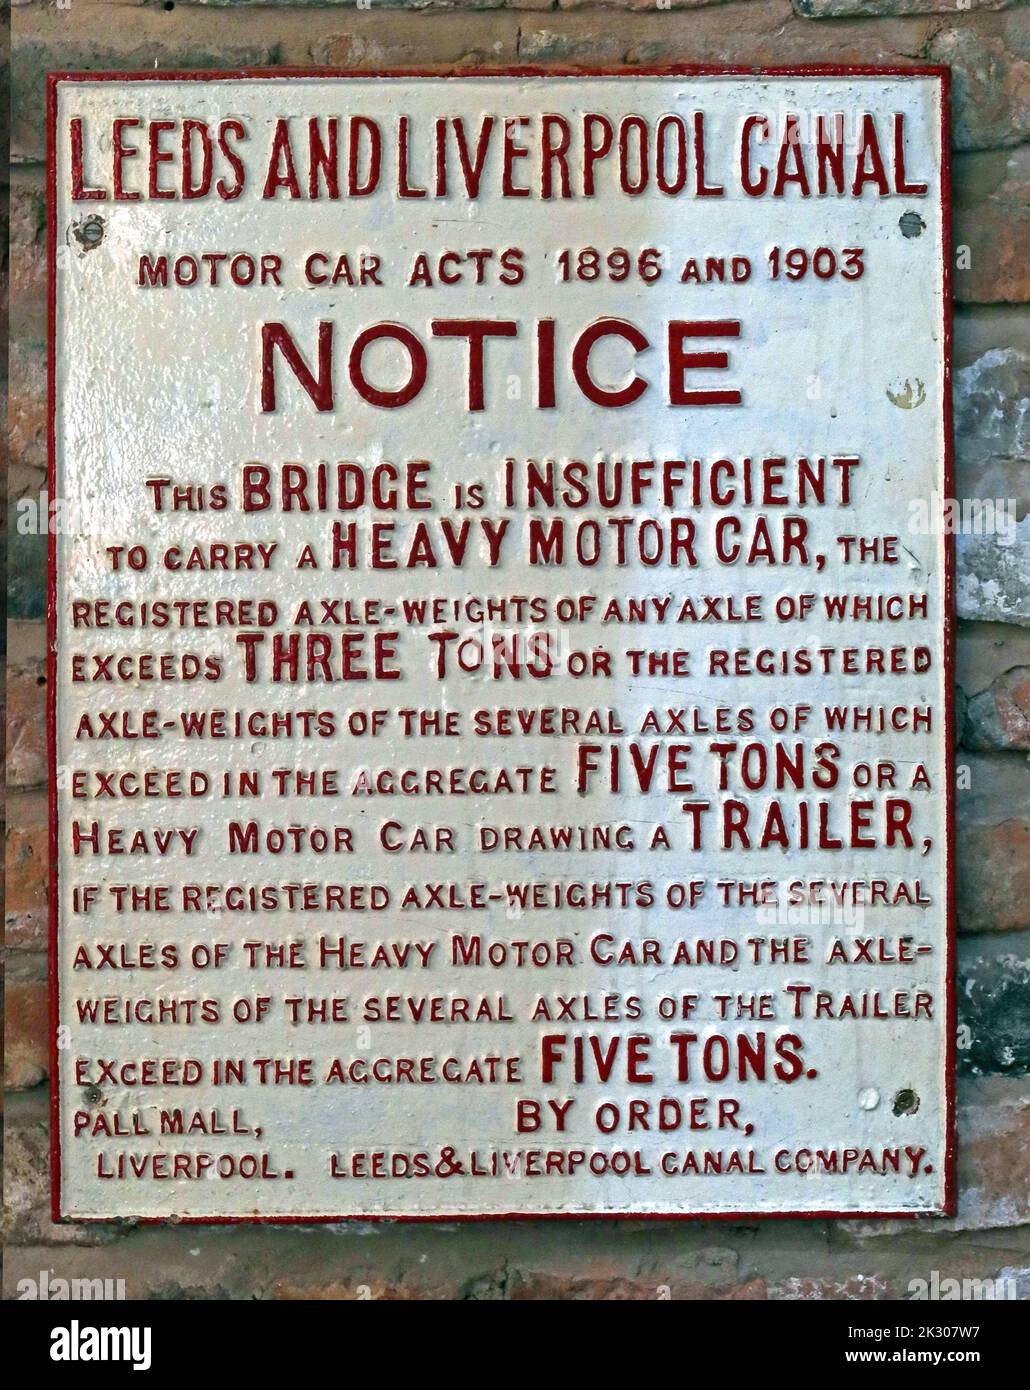 Leeds und Liverpool Kanal, Bridge Notice, Motor Car Act 1896 und 1903, Achtung, diese Brücke reicht nicht aus, um ein schweres Auto zu befördern Stockfoto